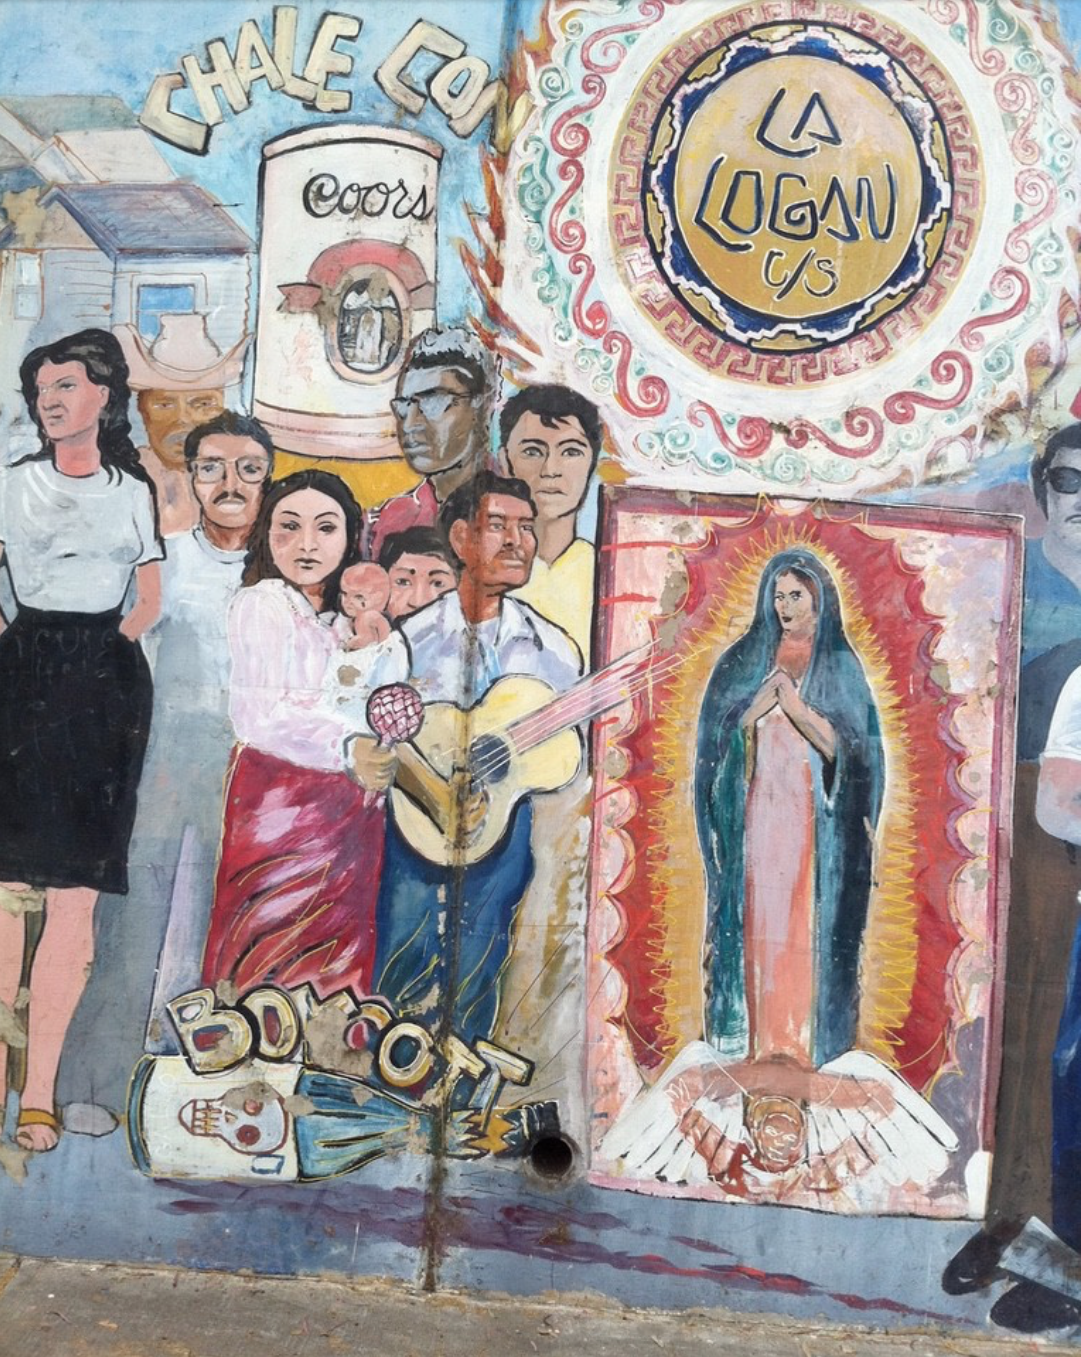 The Catholic art of Frida Kahlo